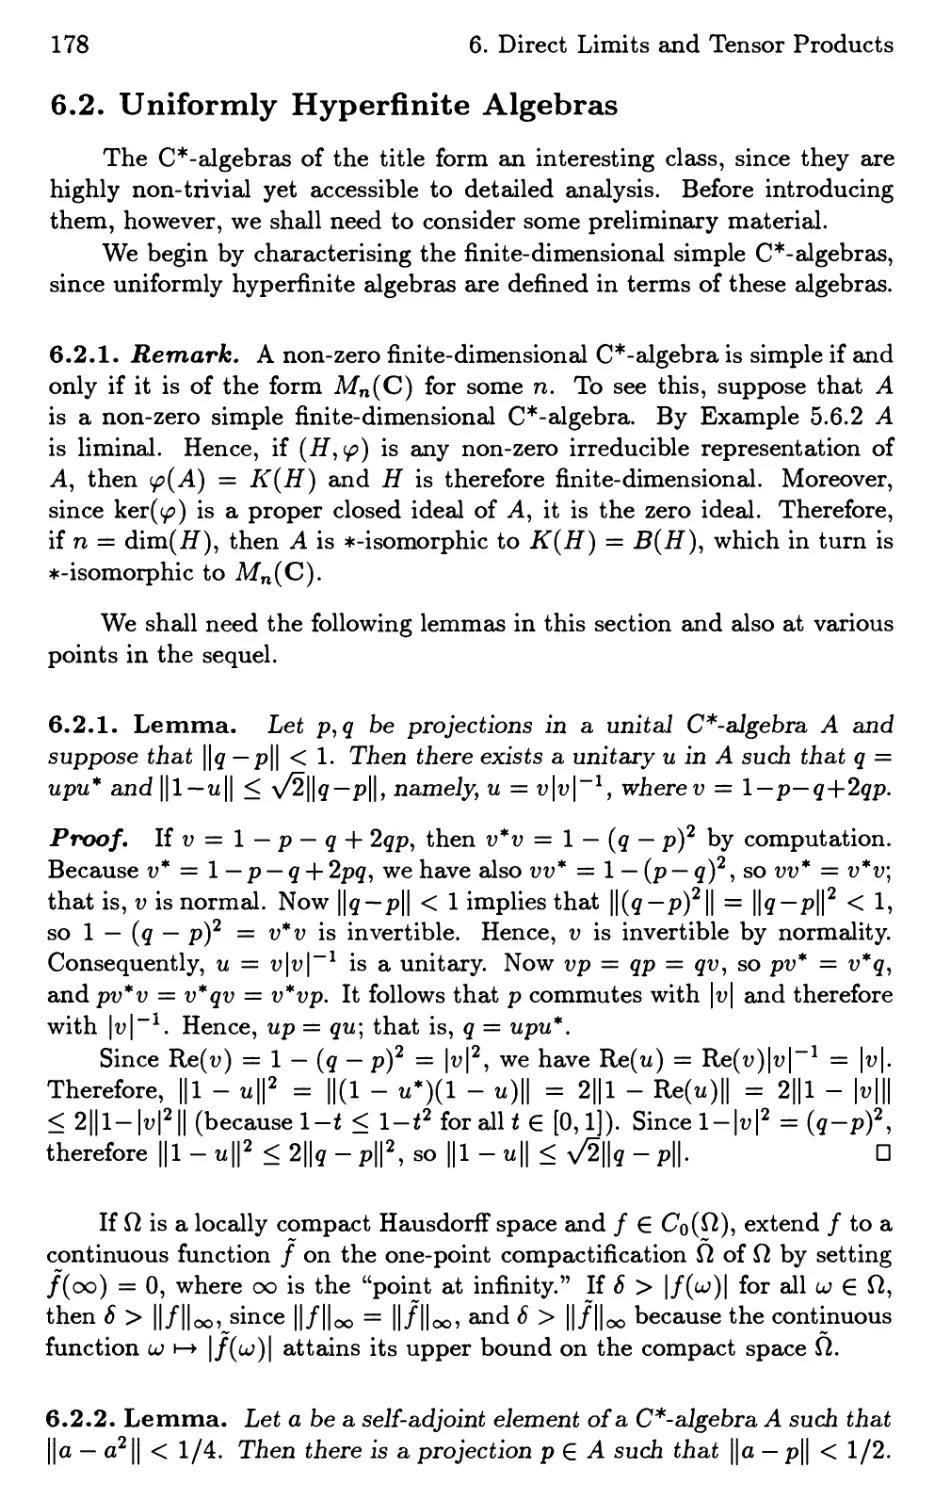 6.2. Uniformly Hyperfinite Algebras